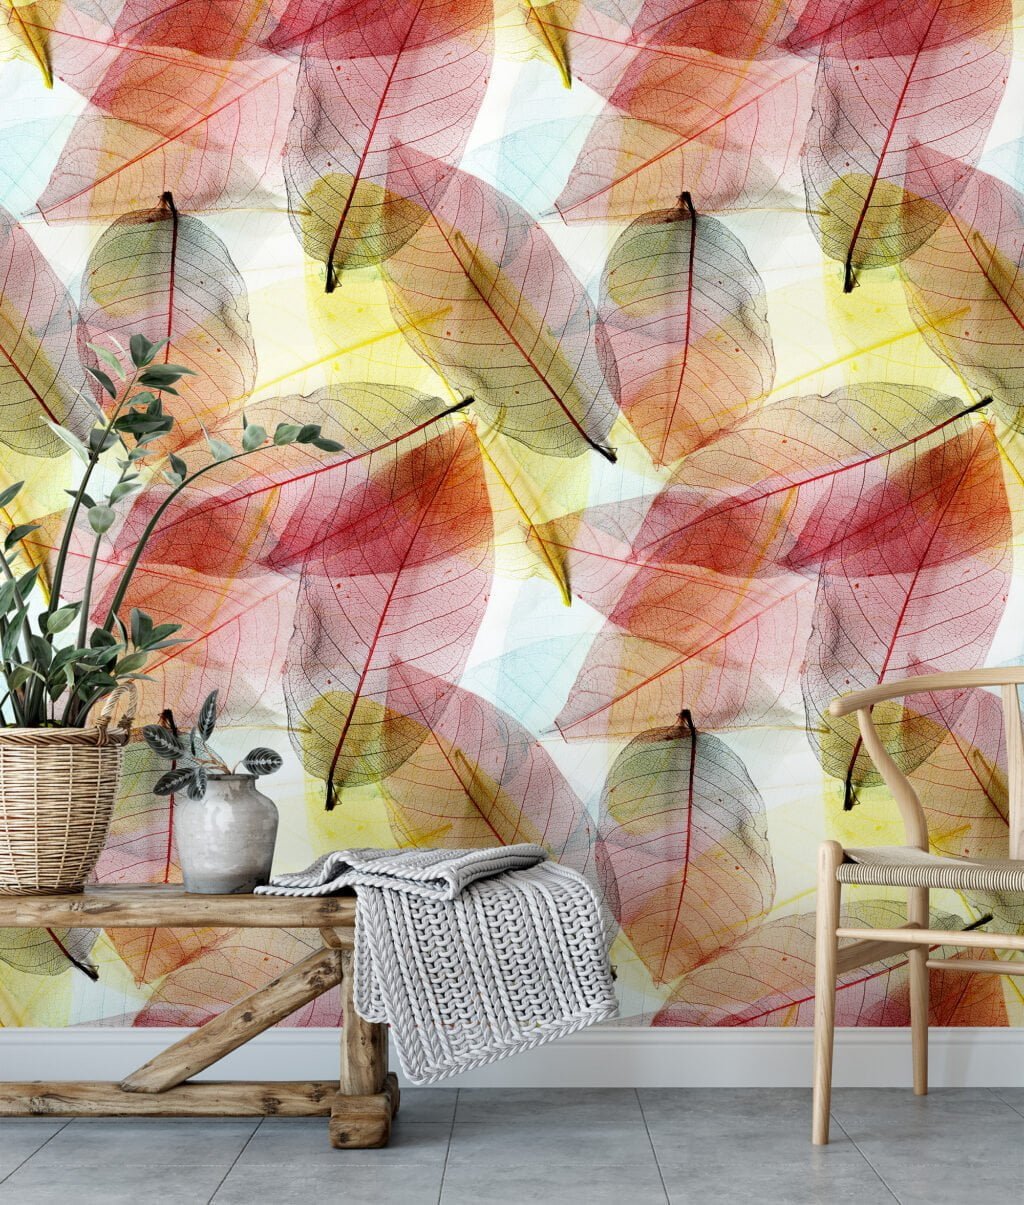 Büyük Renkli Yapraklar Duvar Kağıdı, Saydam Sonbahar Yapraklı 3D Duvar Posteri Yaprak Desenli Duvar Kağıtları 4